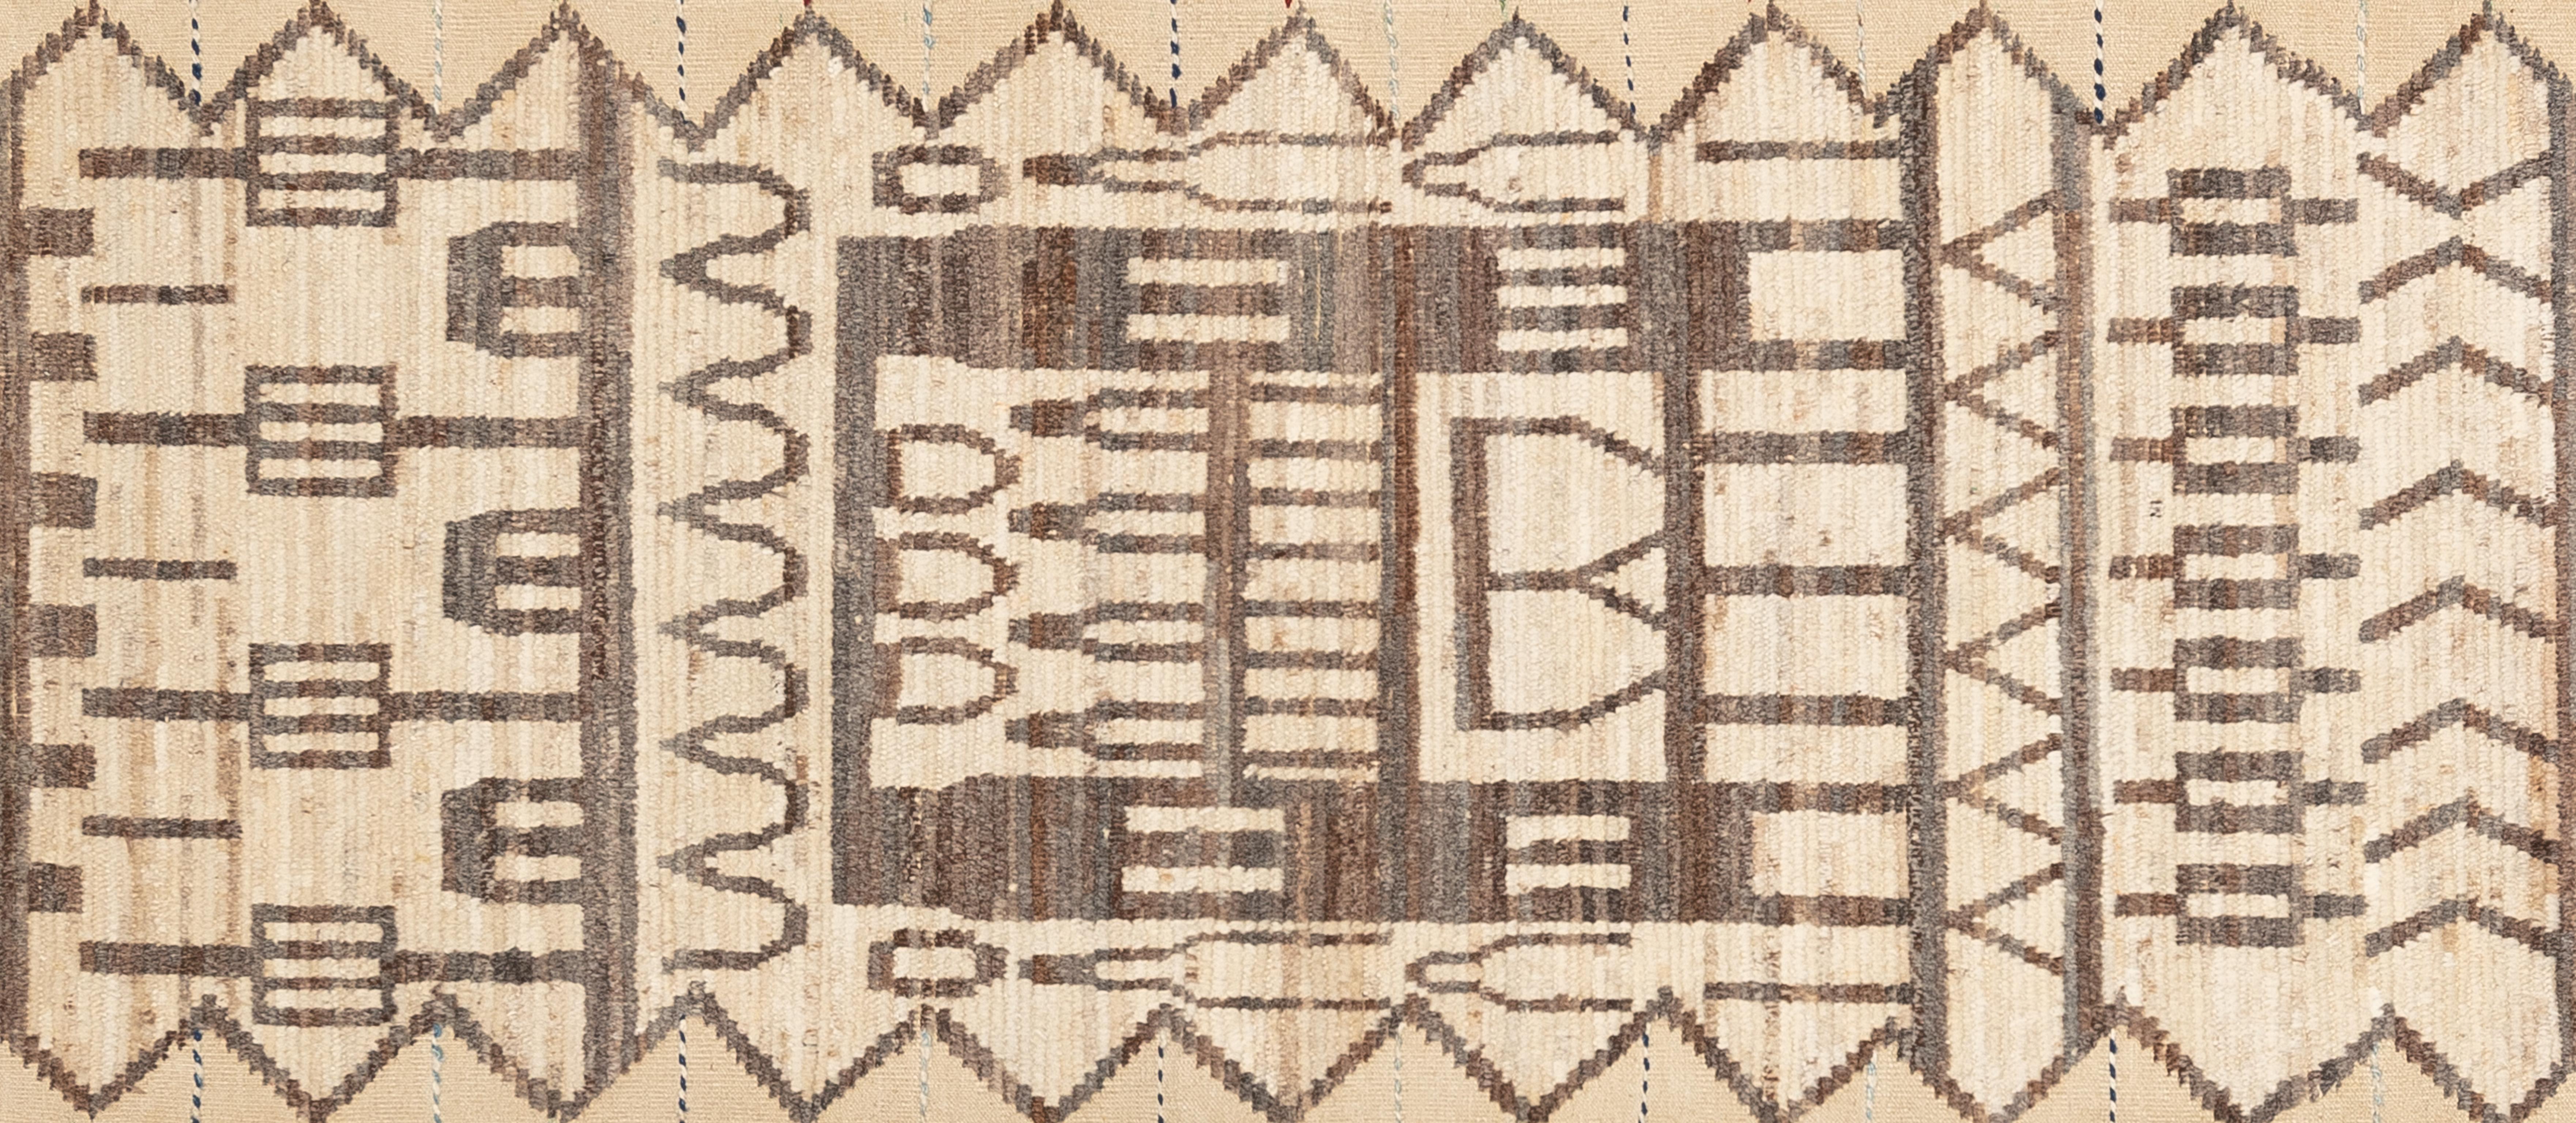 Handgewebt aus 100% handgesponnener Wolle in den subtropischen Wäldern Pakistans ist dieser wunderschöne, natürlich gefärbte marokkanische Teppich ein echtes Unikat. Marokkanische Teppiche sind meist schlicht und passen perfekt zu Ihrer Einrichtung.